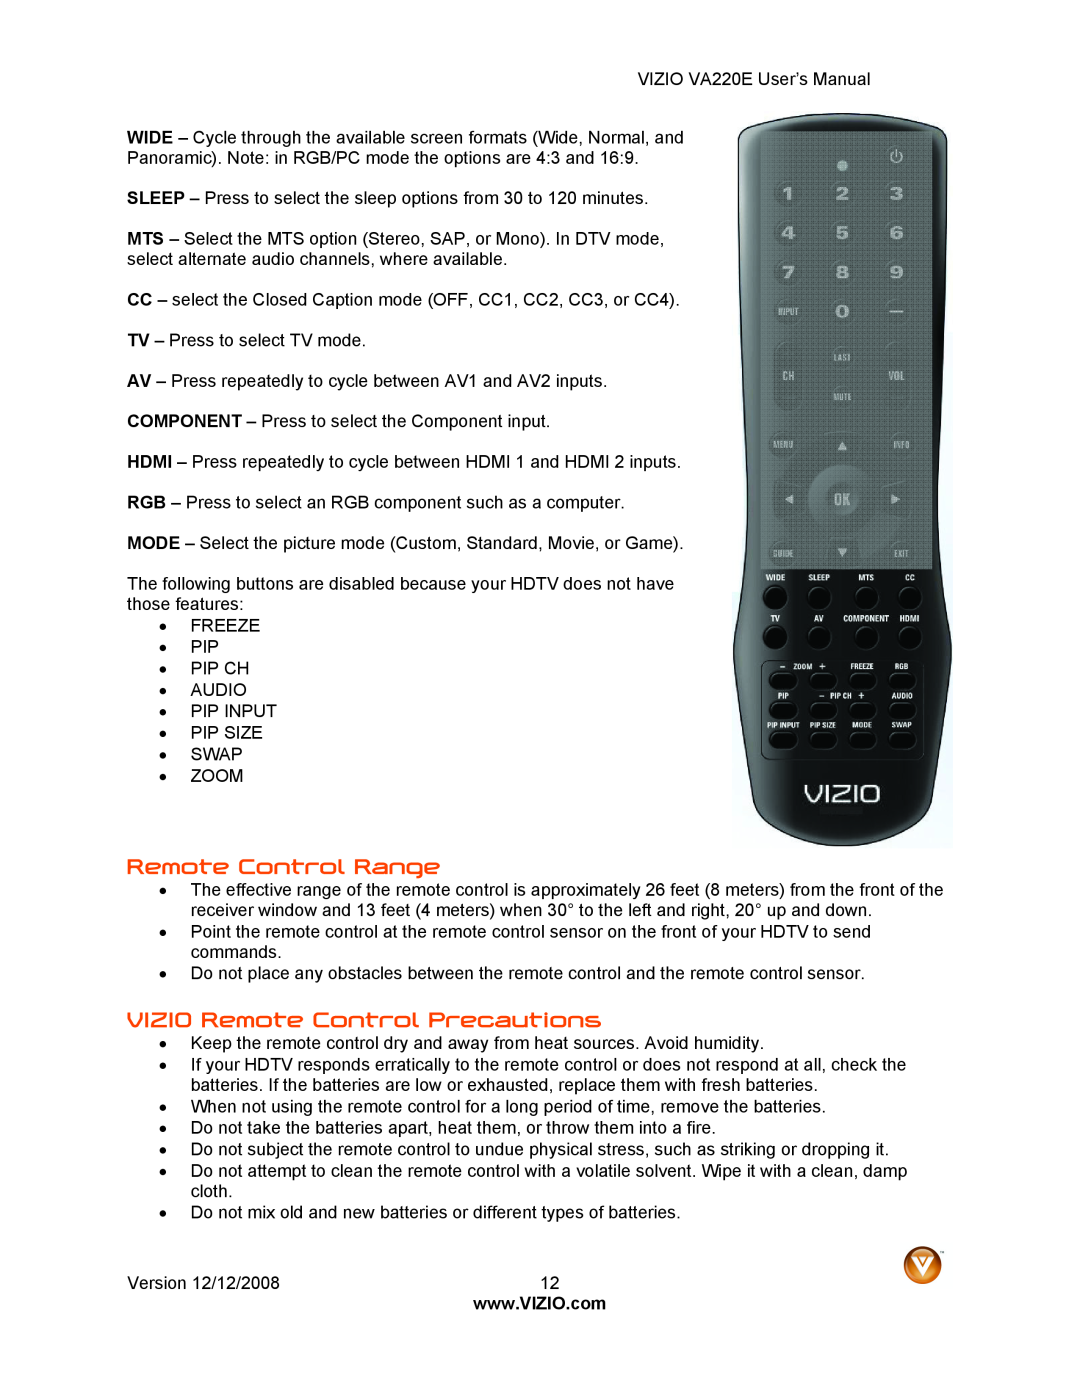 Vizio VA220E user manual Remote Control Range, VIZIO Remote Control Precautions 